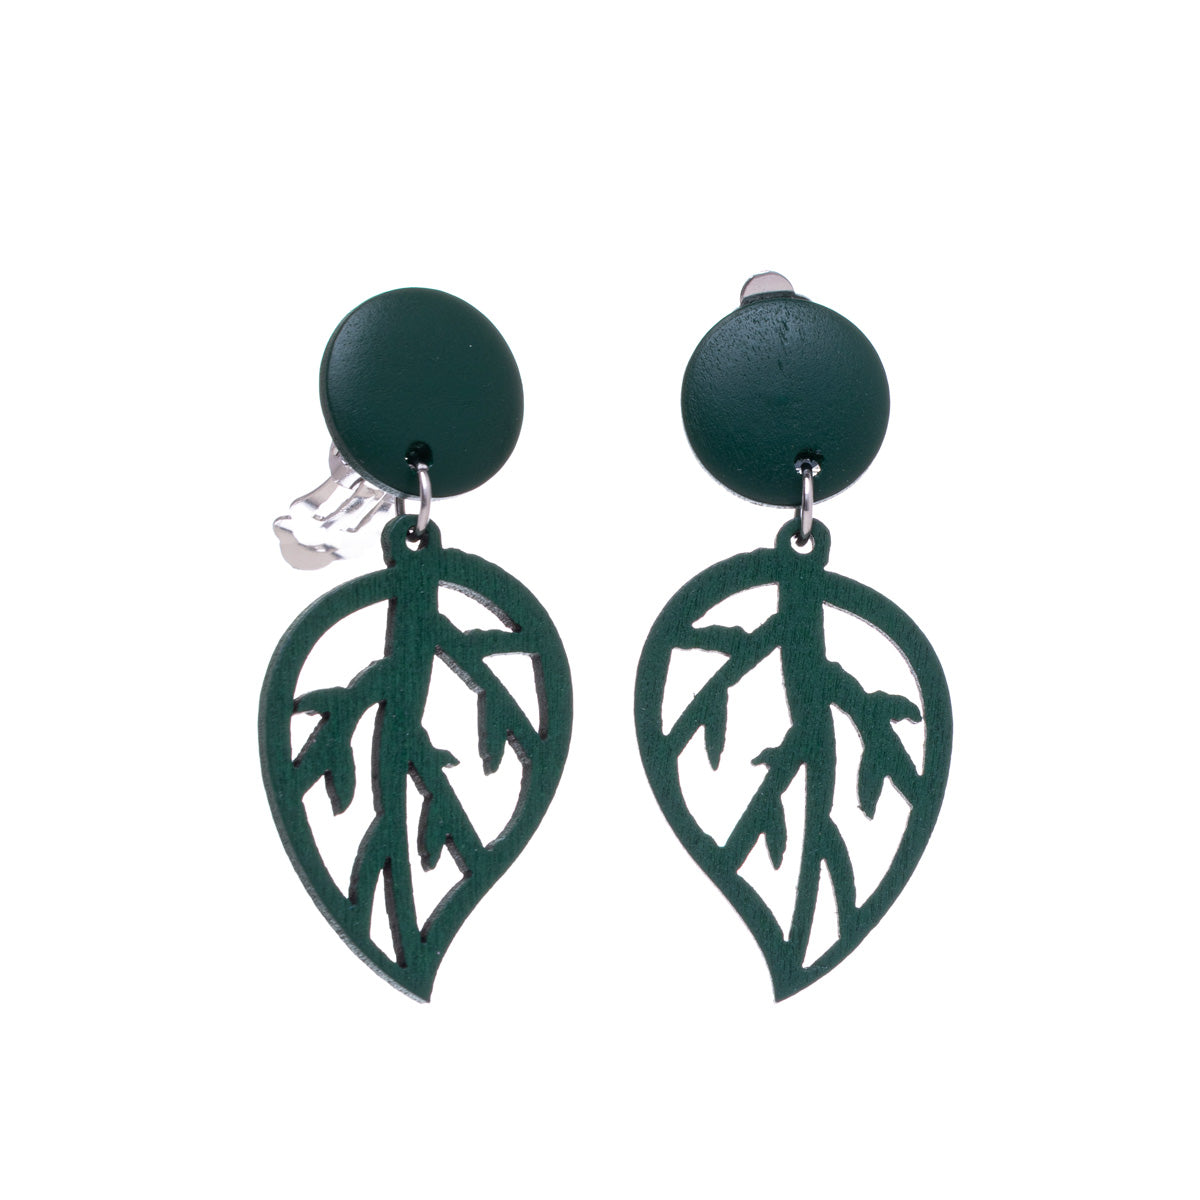 Wooden leaf clip earrings